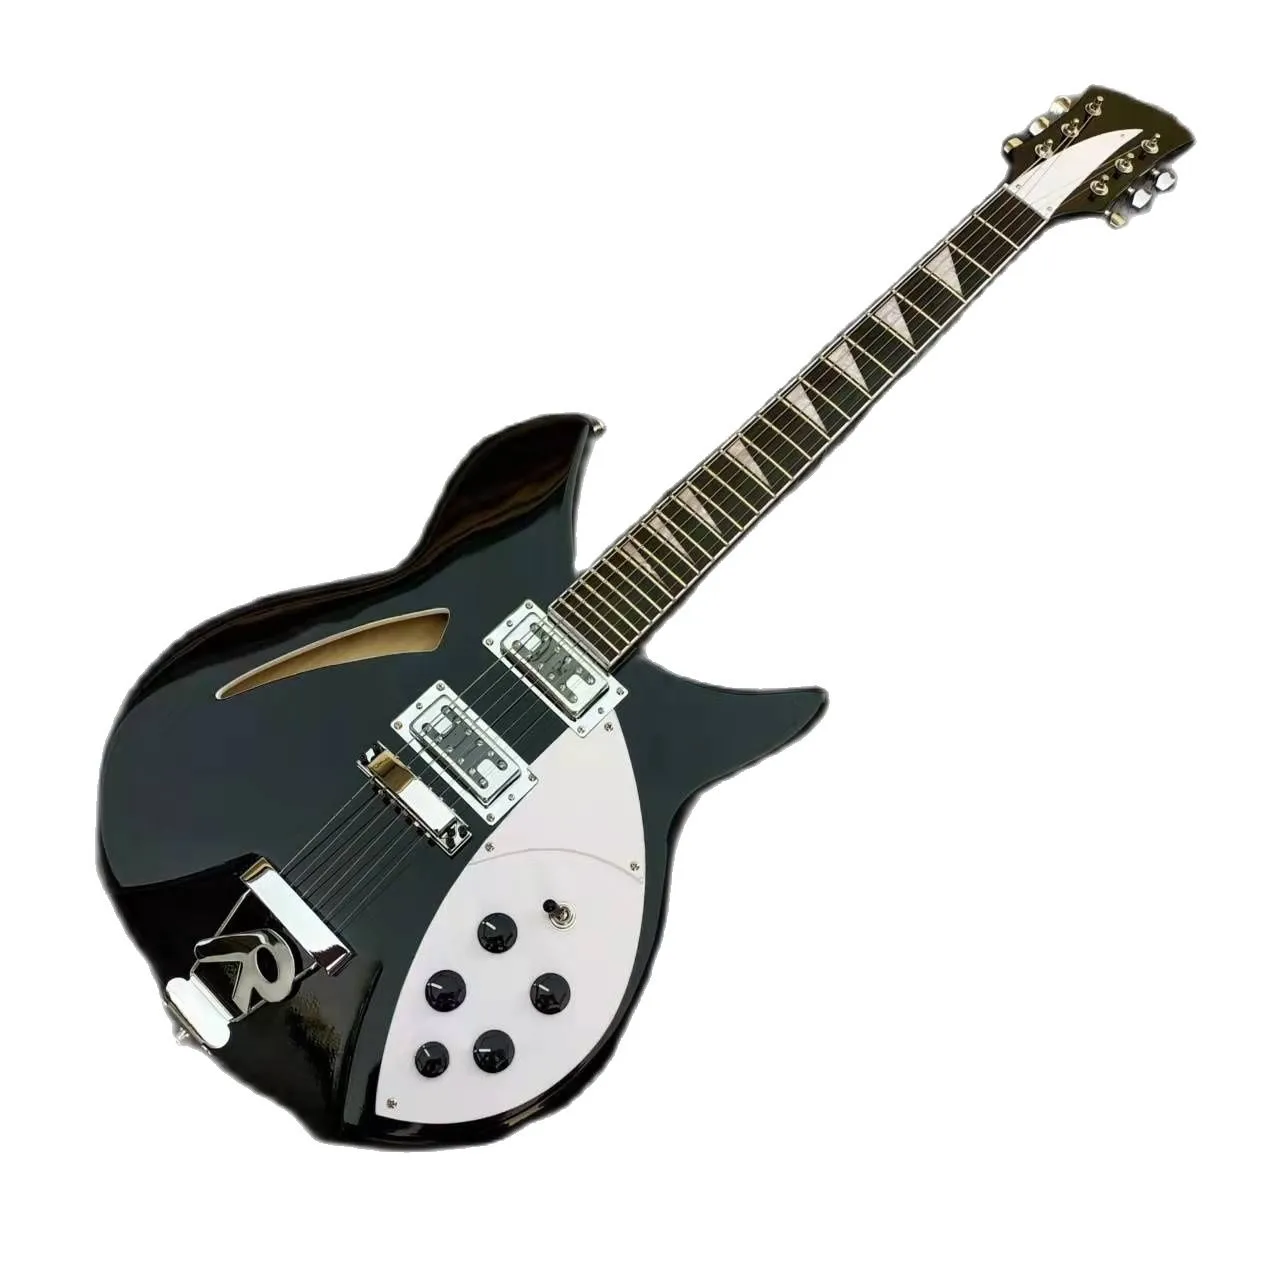 Czarny Model 330 RICK gitara elektryczna 6 strun 24 progi Semi Hollow Body 2 przetworniki Humbucker Ric